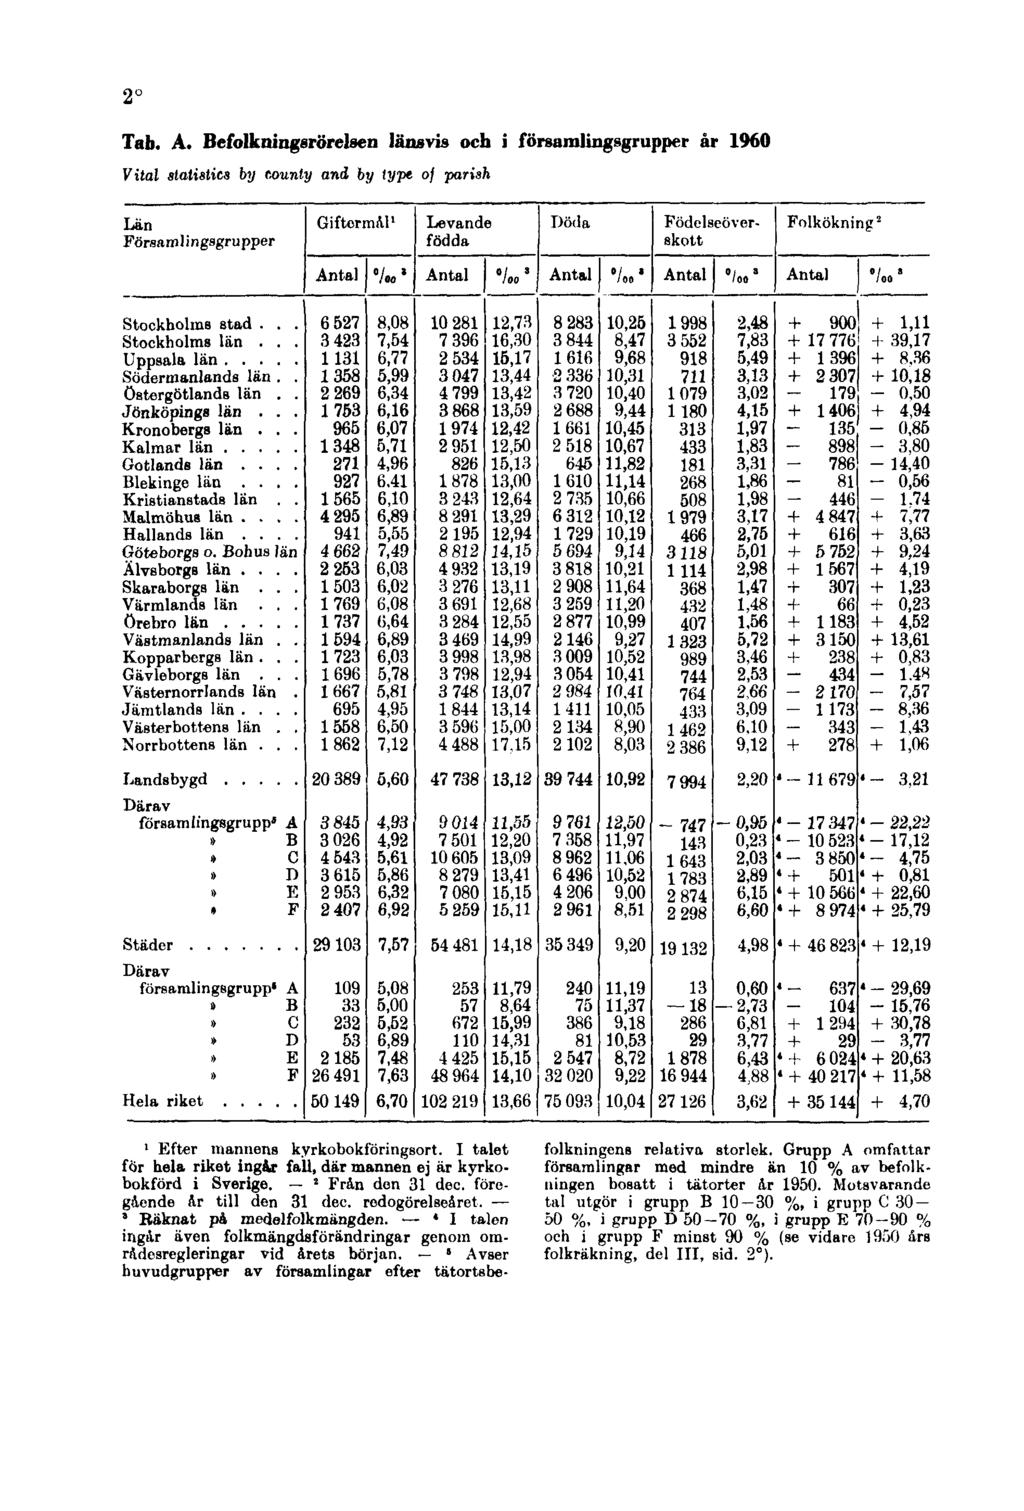 2 Tab. A. Befolkningsrörelsen länsvis och i församlingsgrupper år 1960 Vital statistics by county and by type of parish 1 Efter mannens kyrkobokföringsort.